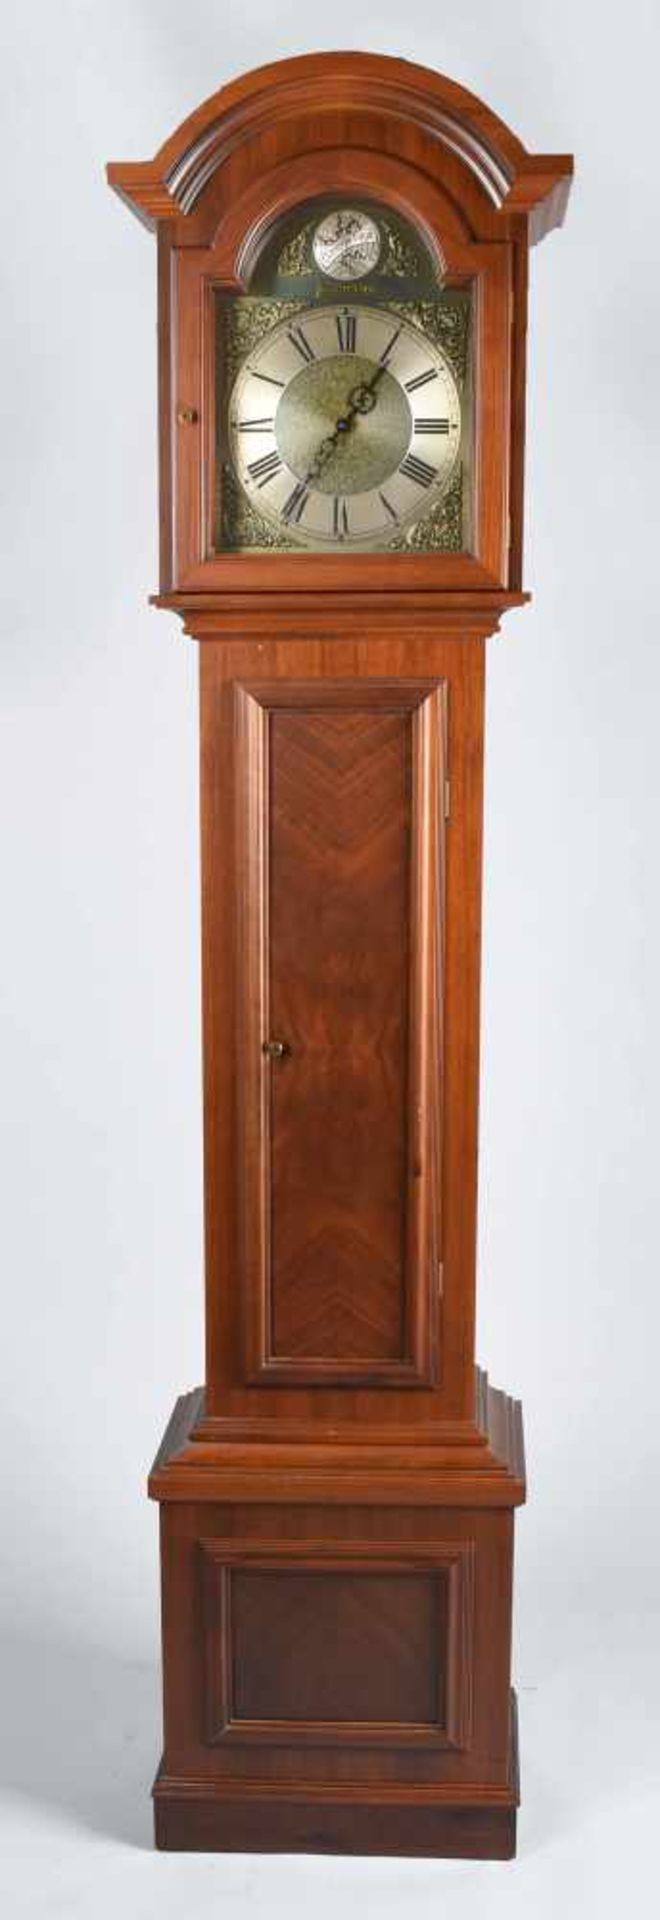 Standuhr Holzgehäuse, gefertigt im Stil alter Standuhren, bez. "Tempus Fugit Westerstrand", - Bild 2 aus 2